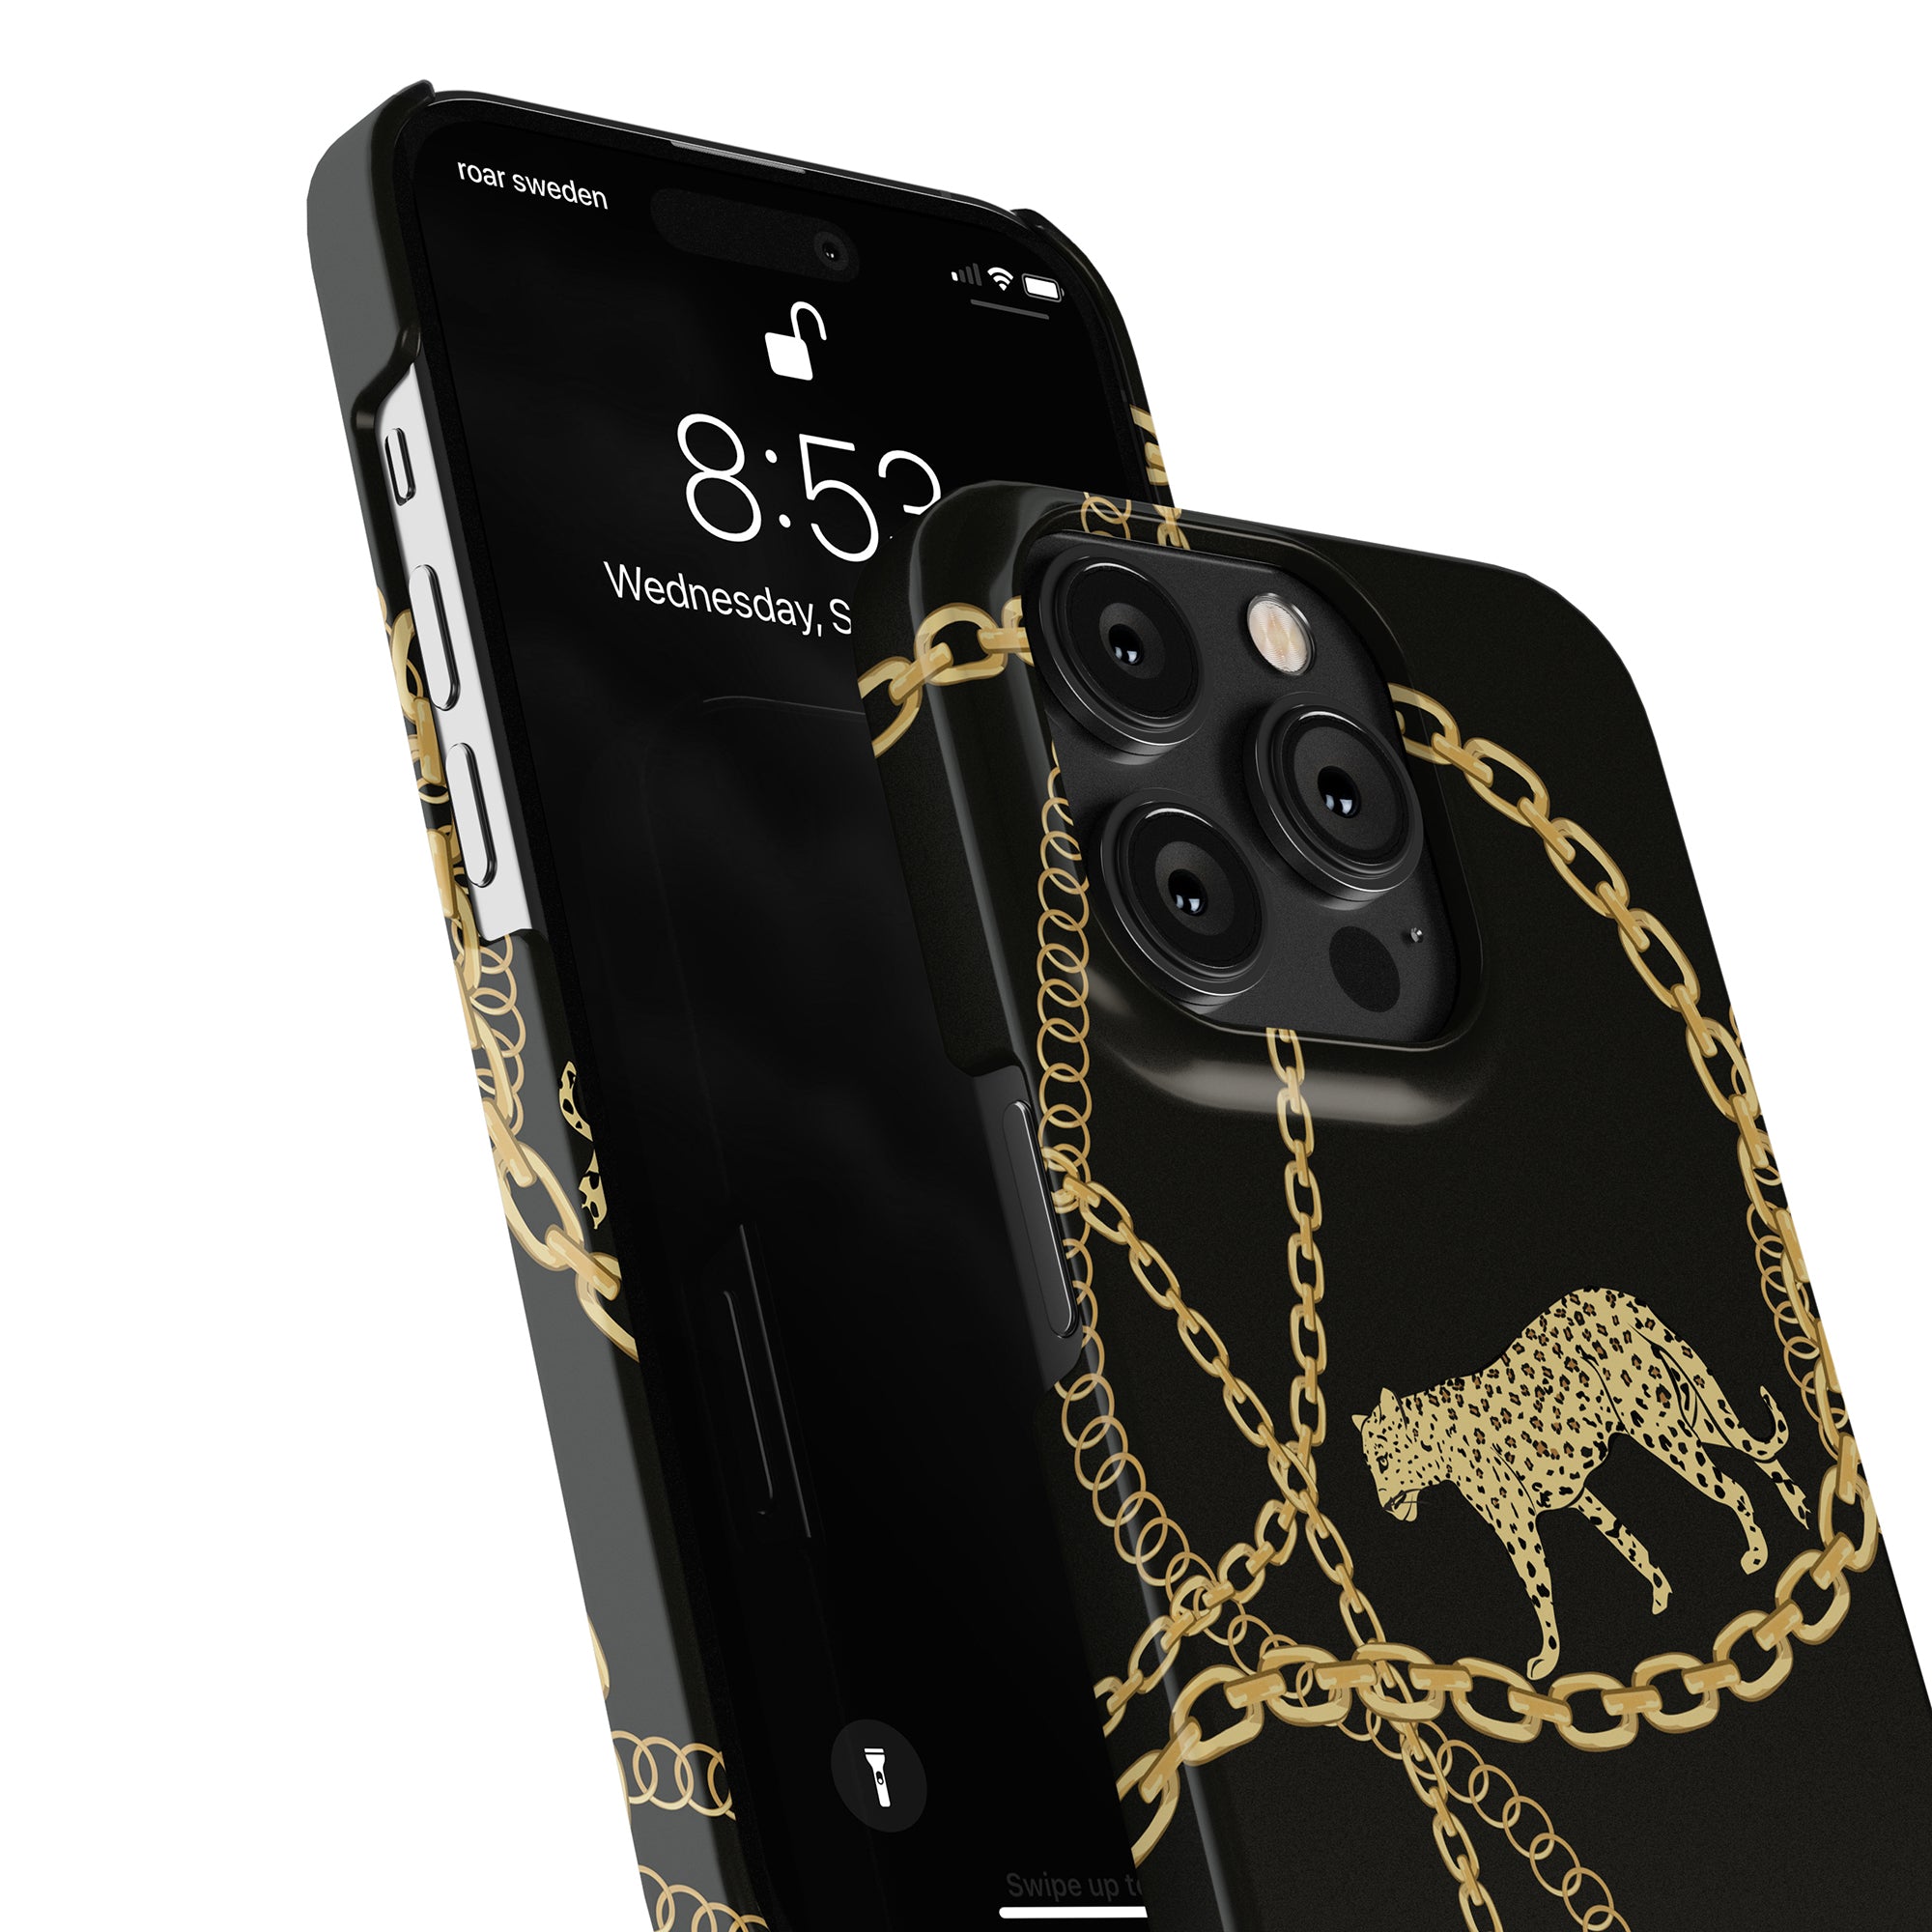 En svart Chains - Slimmet fodral med en guldkedja på, perfekt för dig som uppskattar eleganta accessoarer som smycken och mobilskal. Fodralet har ett elegant leopardmönster som tillför.